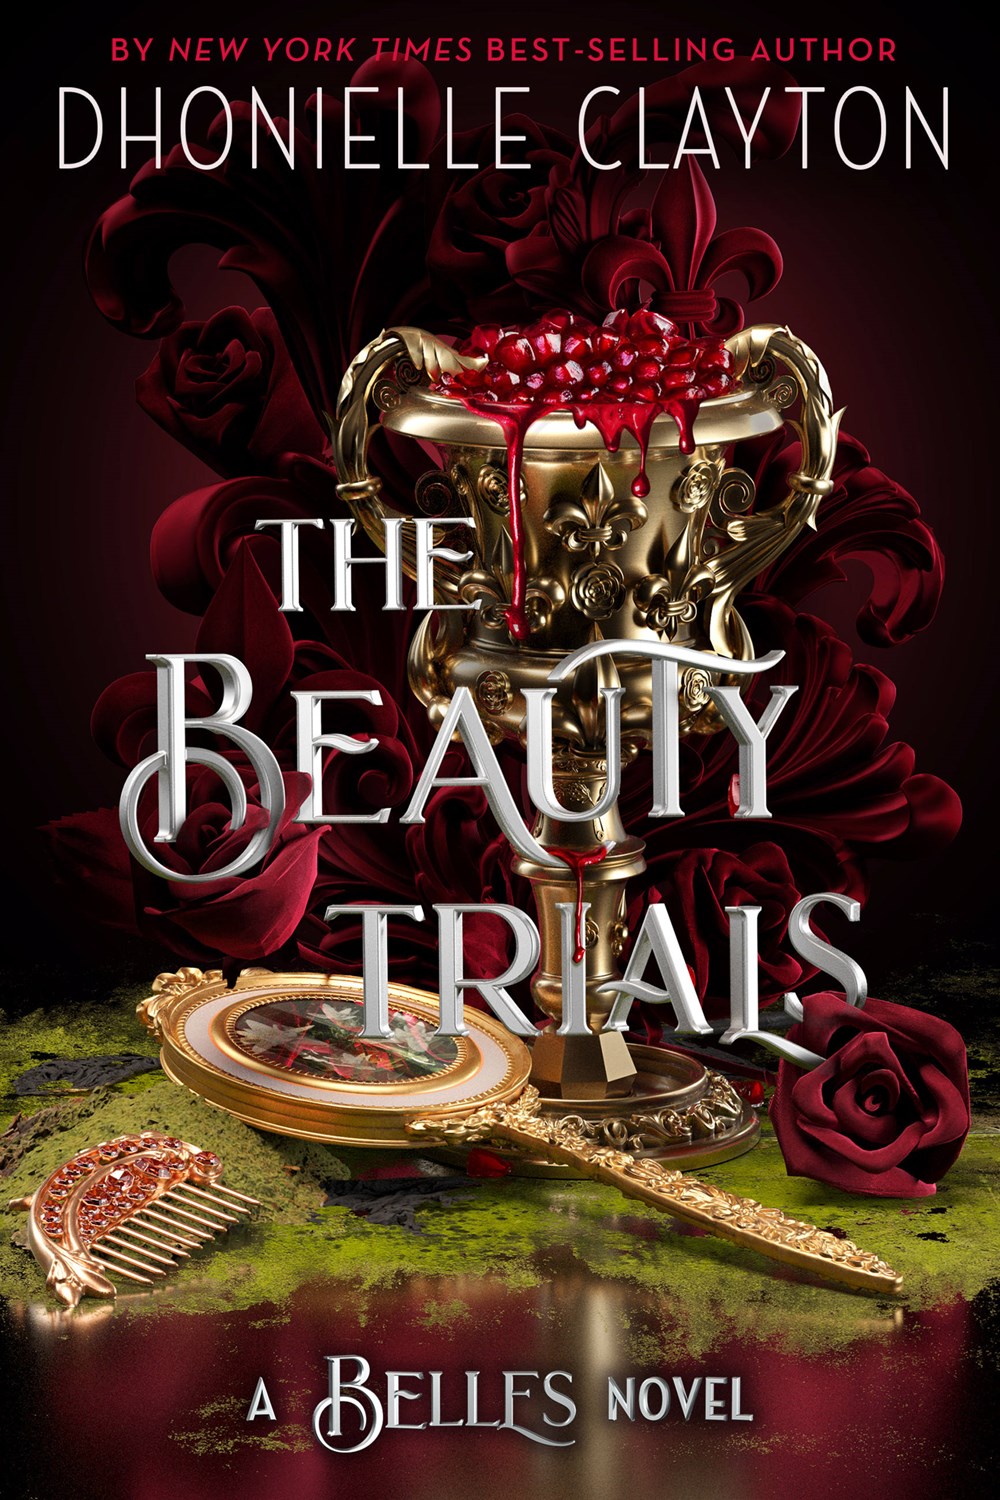 The Beauty Trials (A Belles novel)